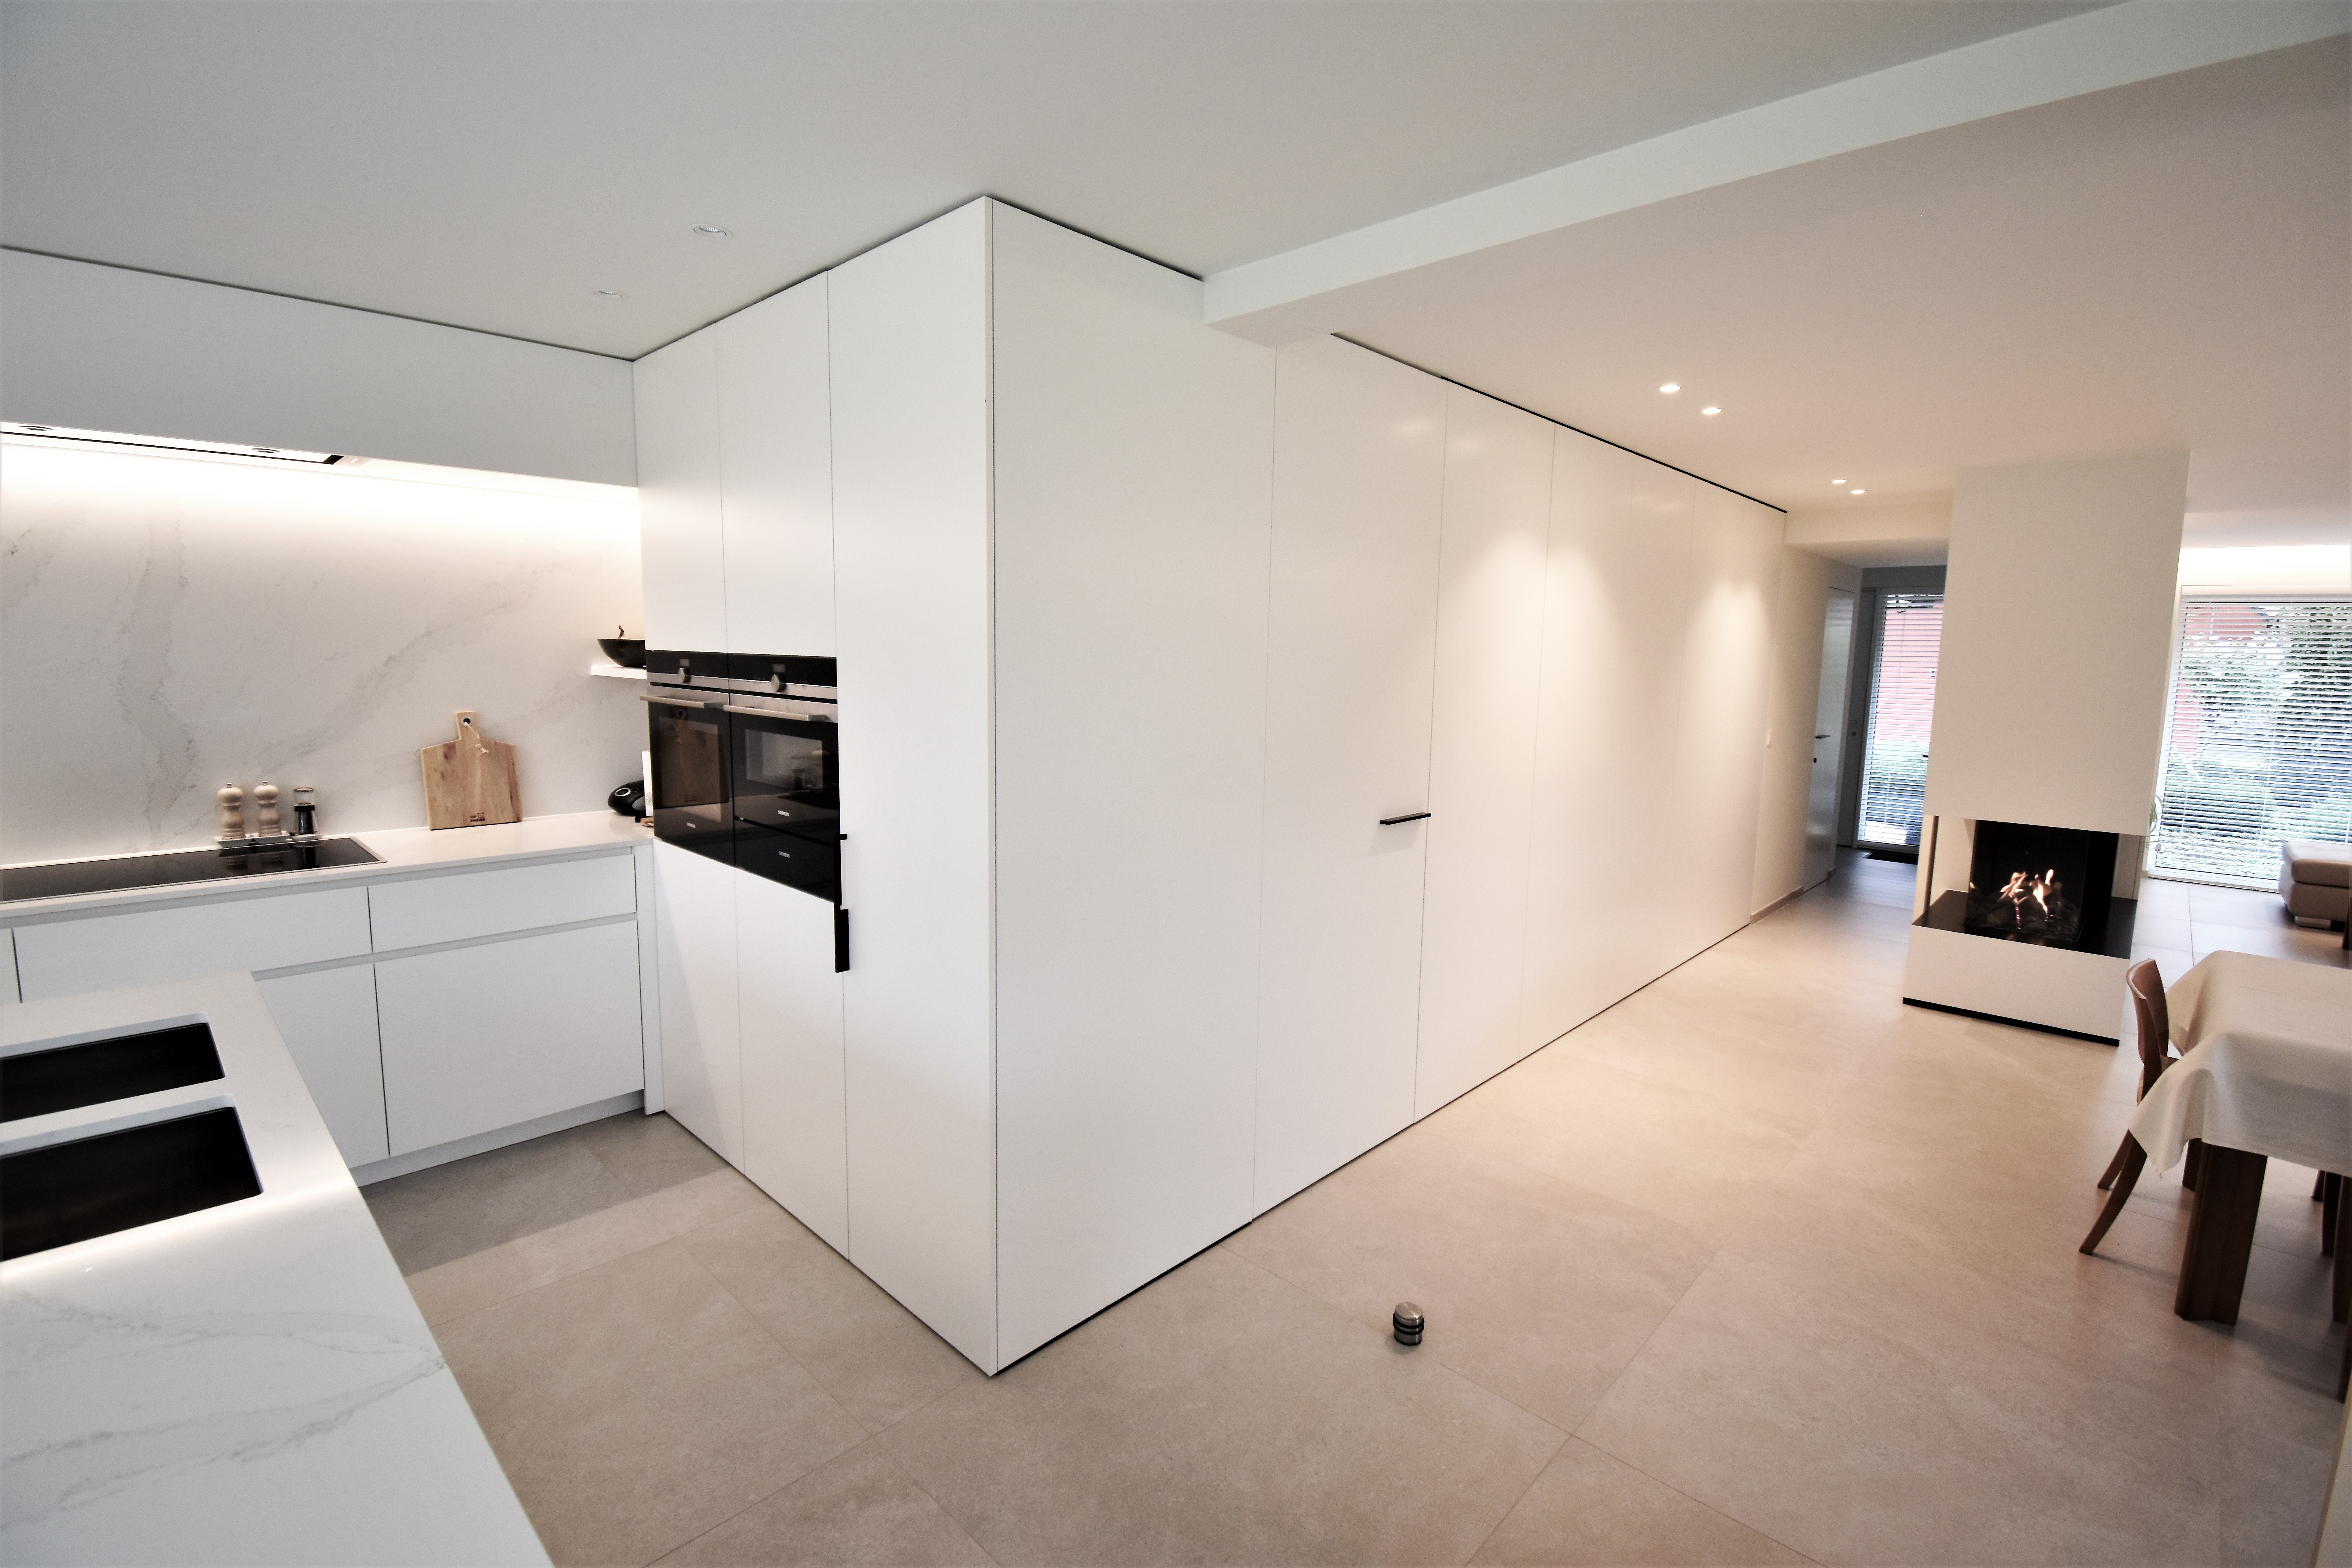 Keuken en woonkamer van een villa gerealiseerd door Zinder.